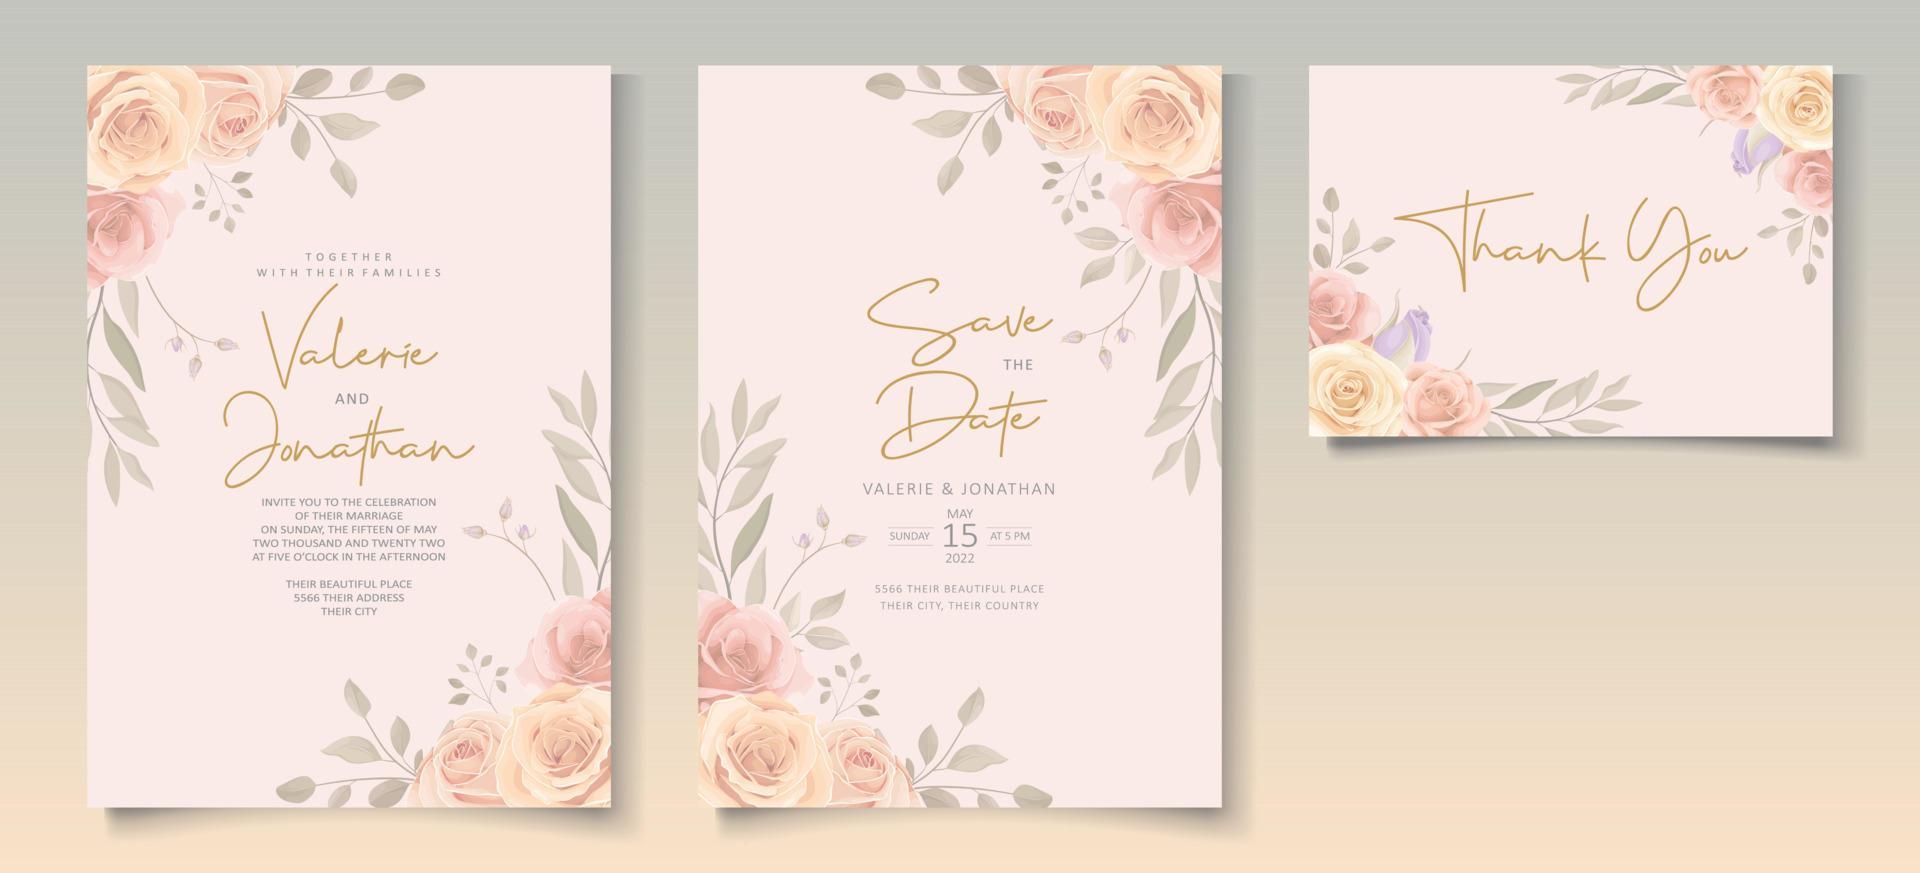 conjunto de hermosa plantilla de invitación de boda con adornos de flores rosas dibujadas a mano vector